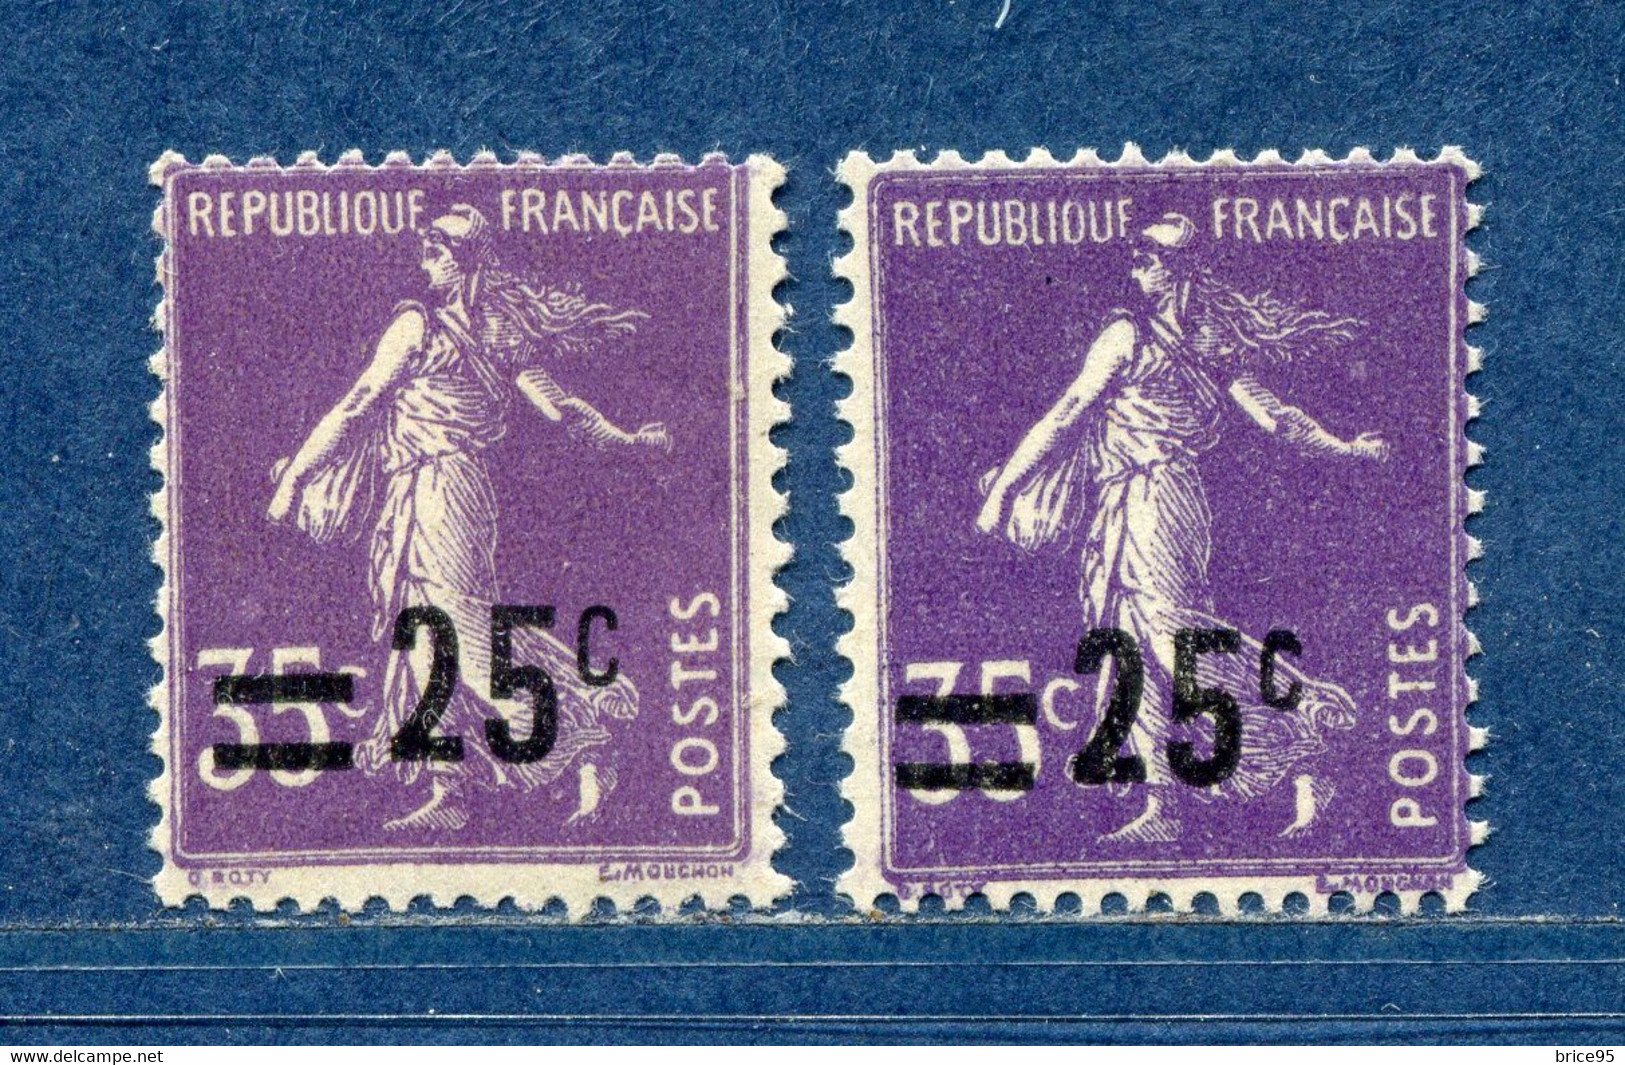 ⭐ France - Variété - YT N° 218 - Couleurs - Pétouilles - Neuf Sans Charnière - 1926 ⭐ - Nuovi